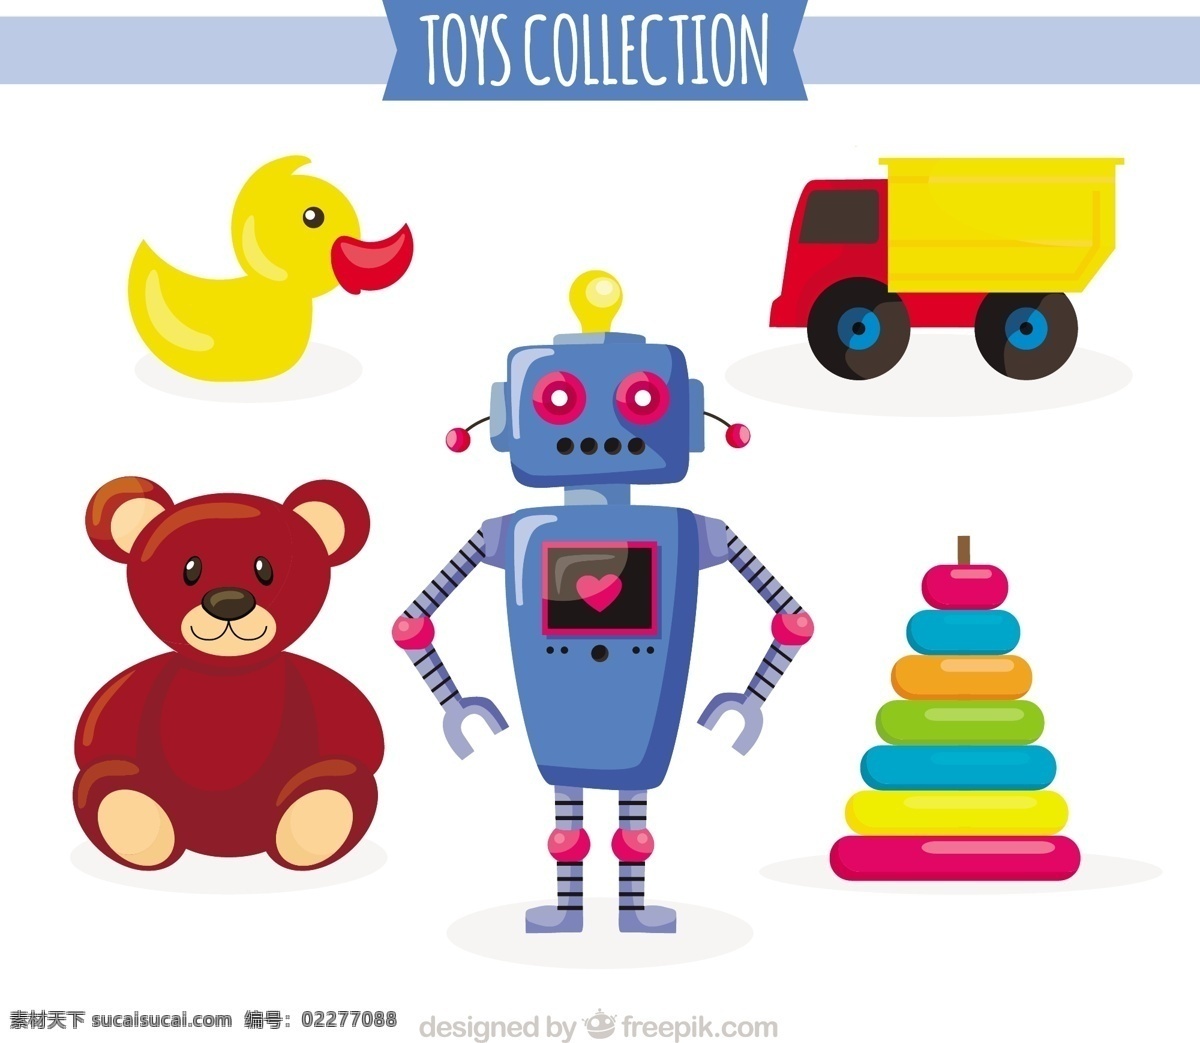 复古儿童玩具 葡萄酒 儿童 复古 卡通 汽车 机器人 孩子 丰富多彩 玩具 游戏 娱乐 搞笑 泰迪 传统